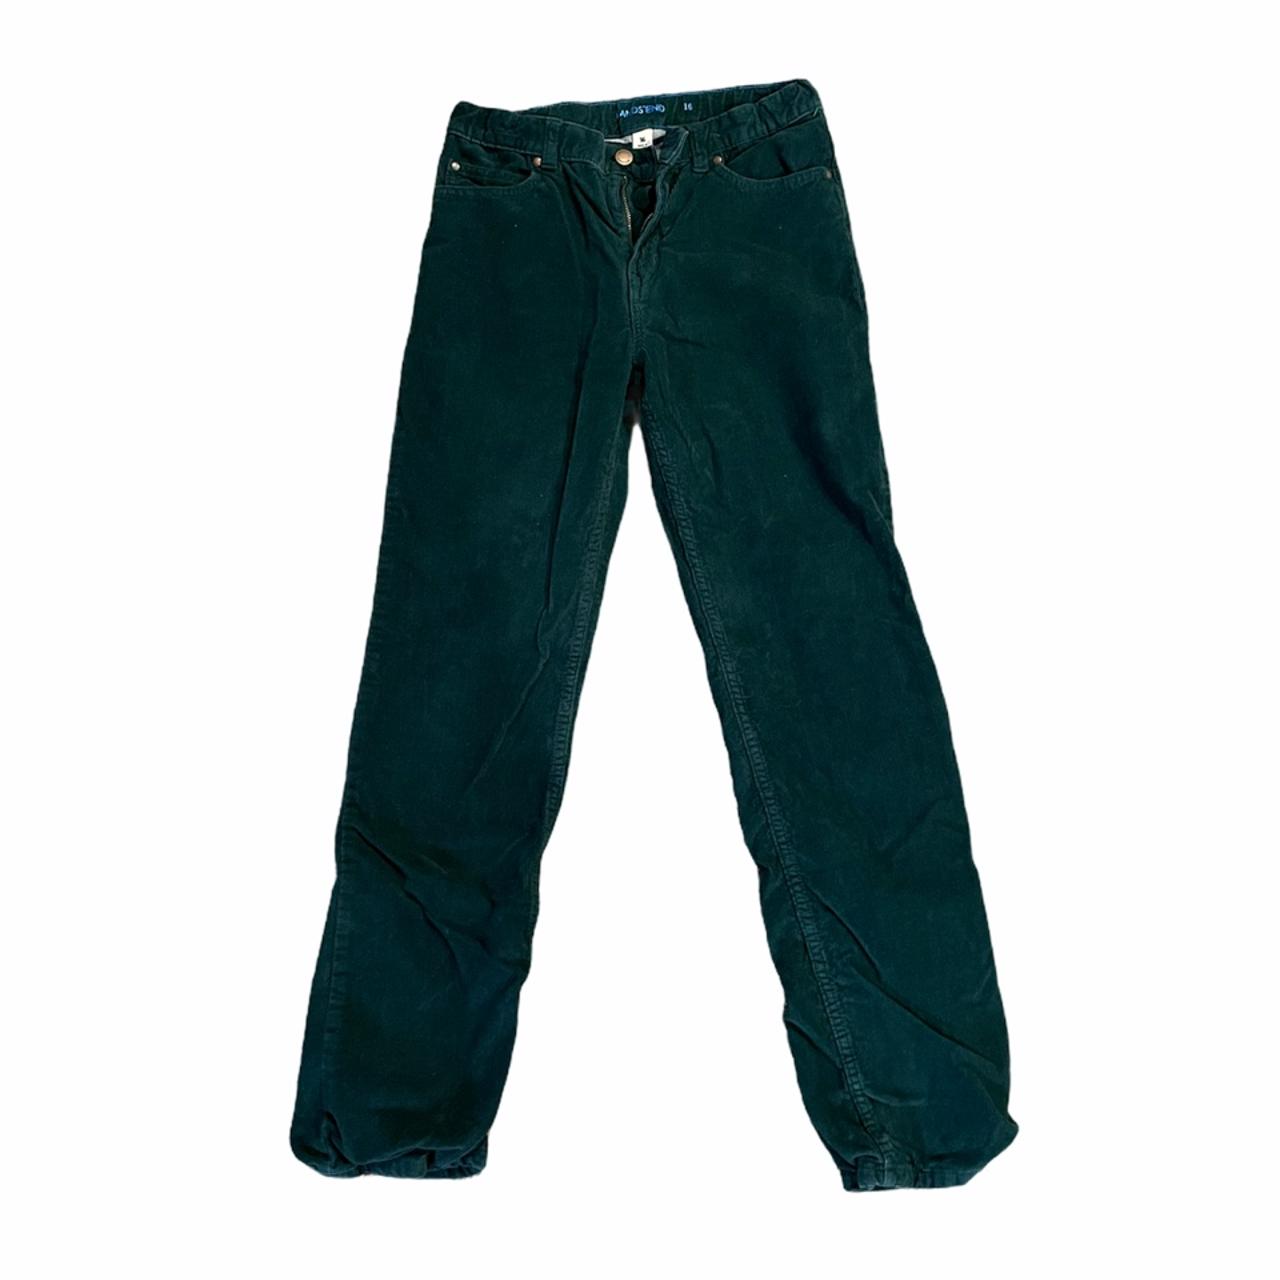 Dark green corduroy jeans size 0 #jeans... - Depop